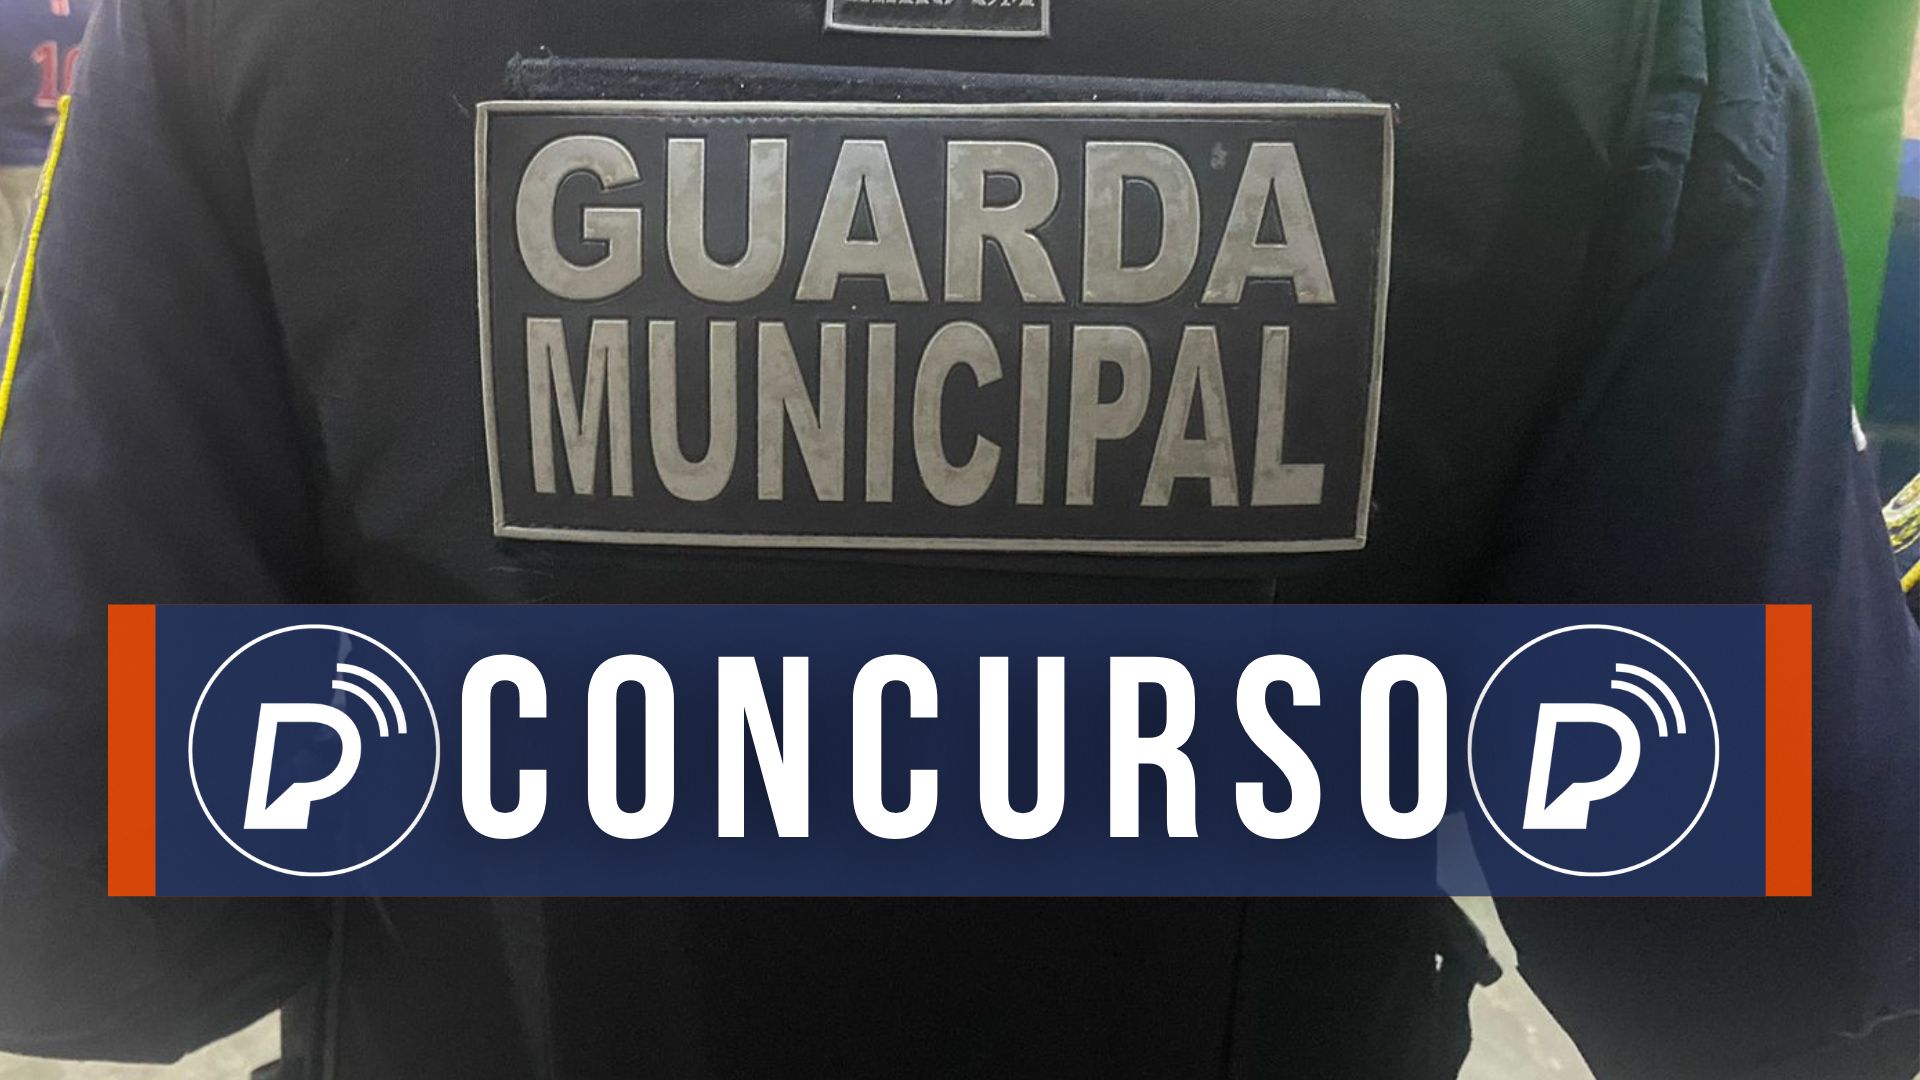 Concurso da Guarda Municipal. Foto: Divulgação